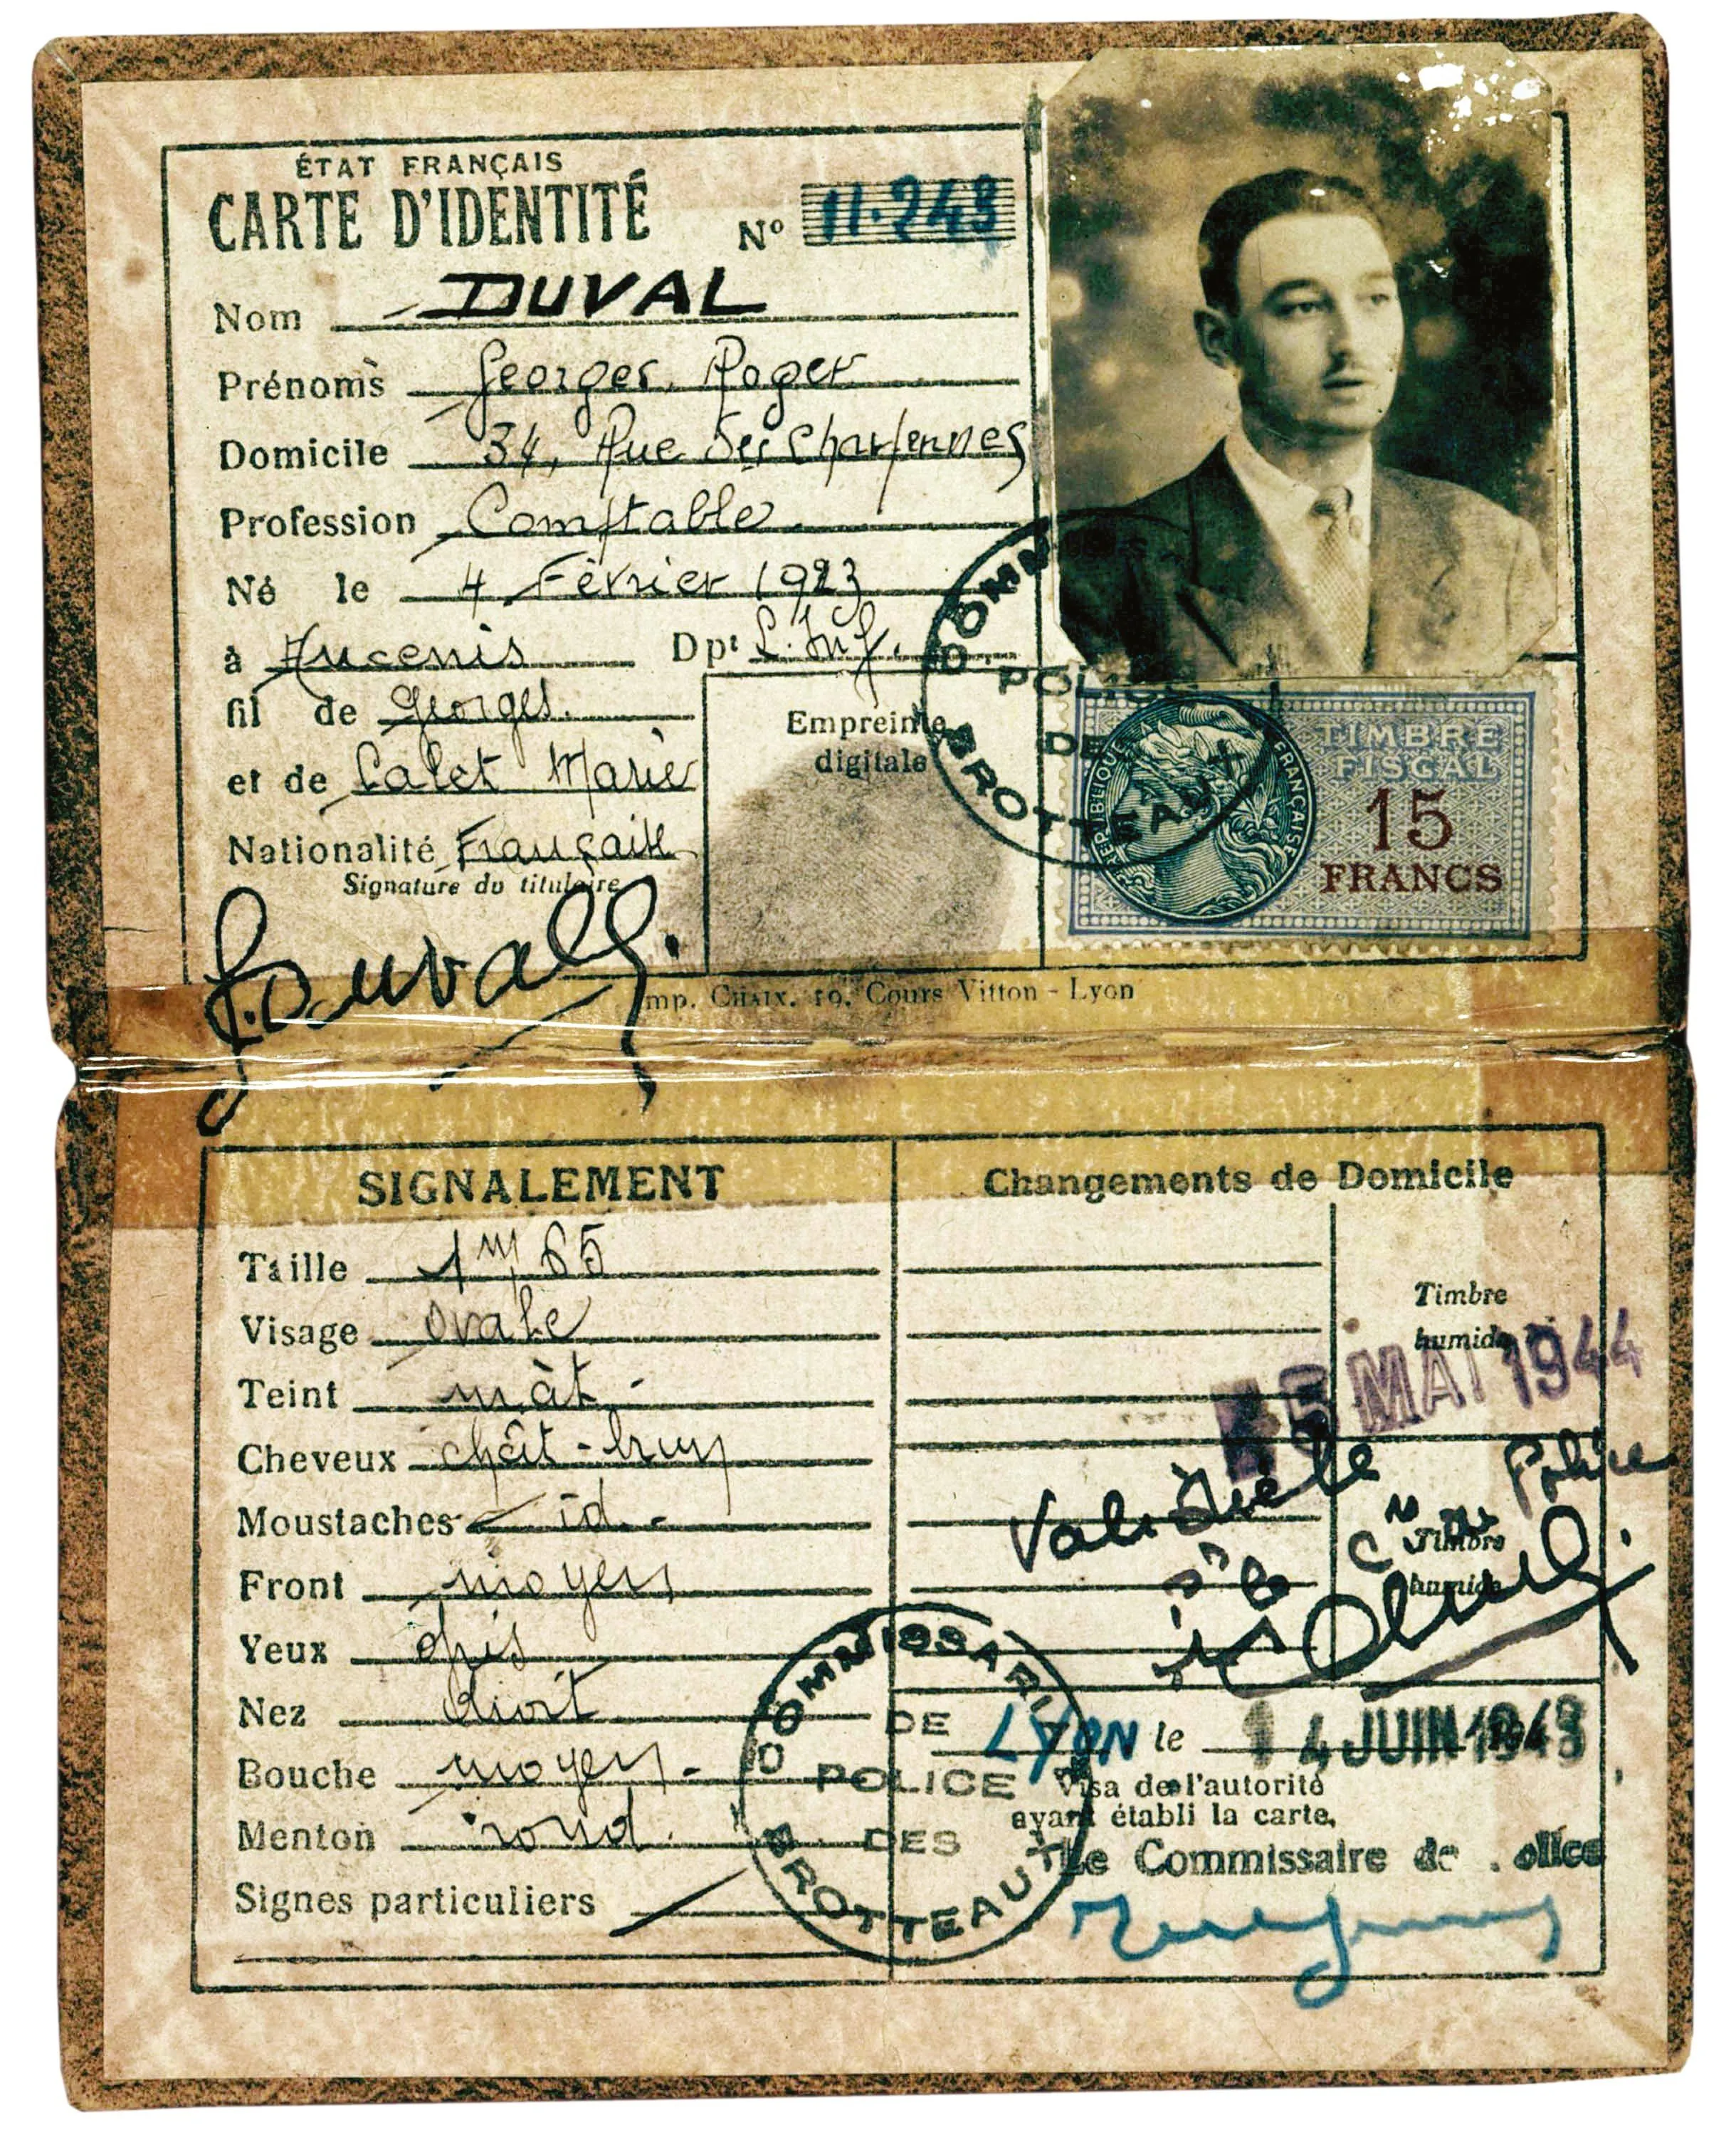  Fausse carte d'identité du résistant Roger Bosse, sous le pseudonyme de Georges Duval, Lyon, juin 1943.